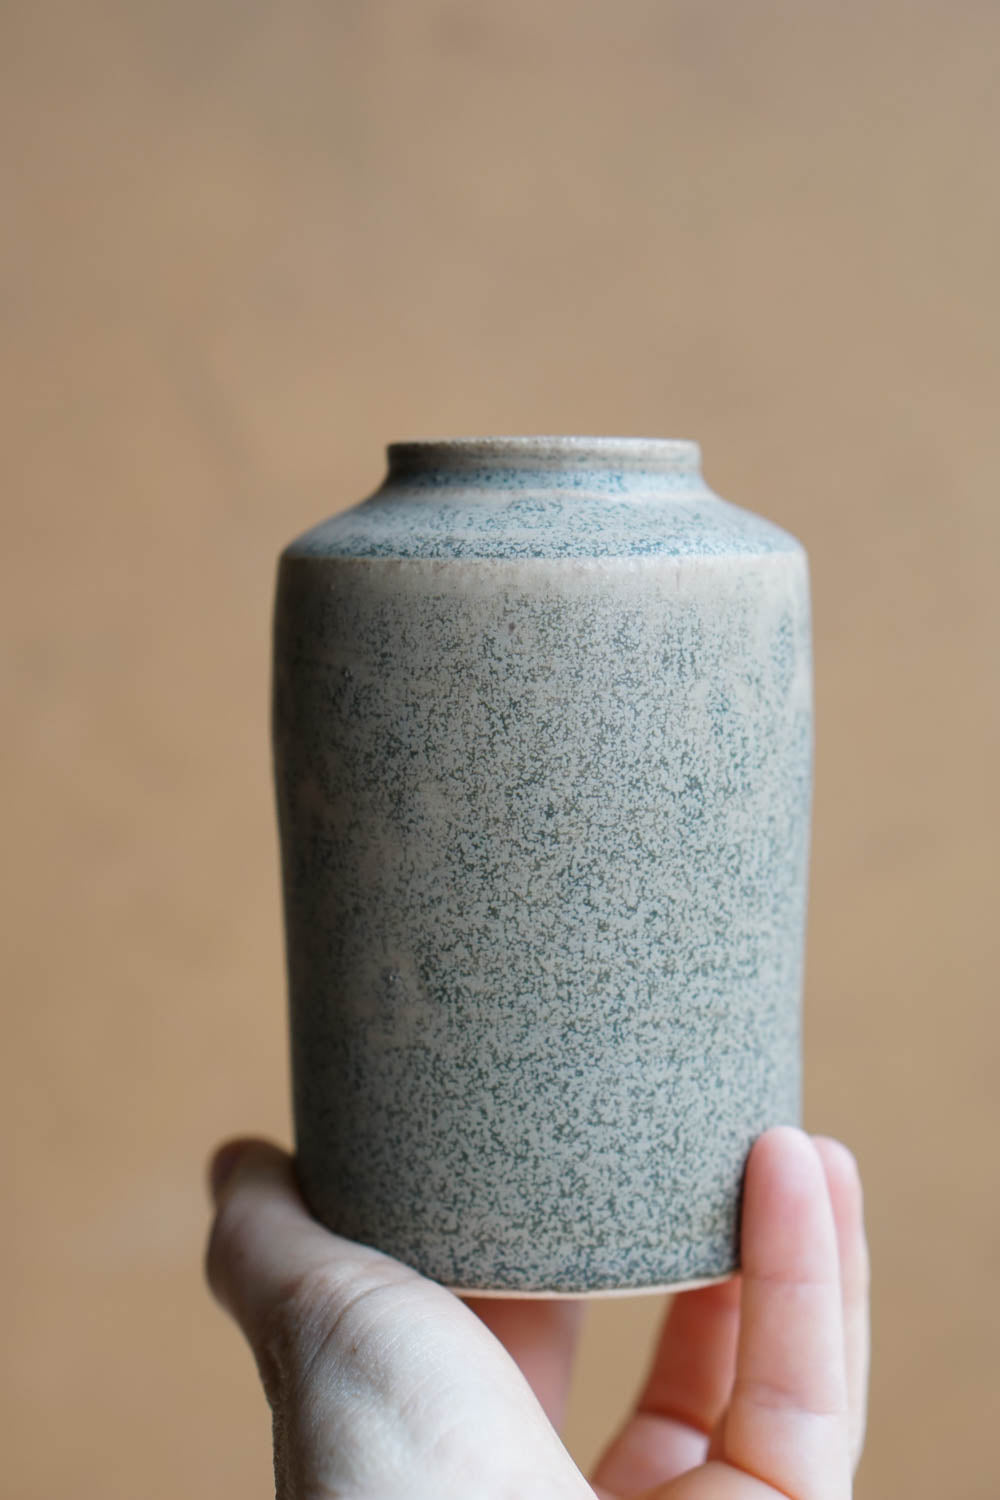 Green sage bottle vase #4